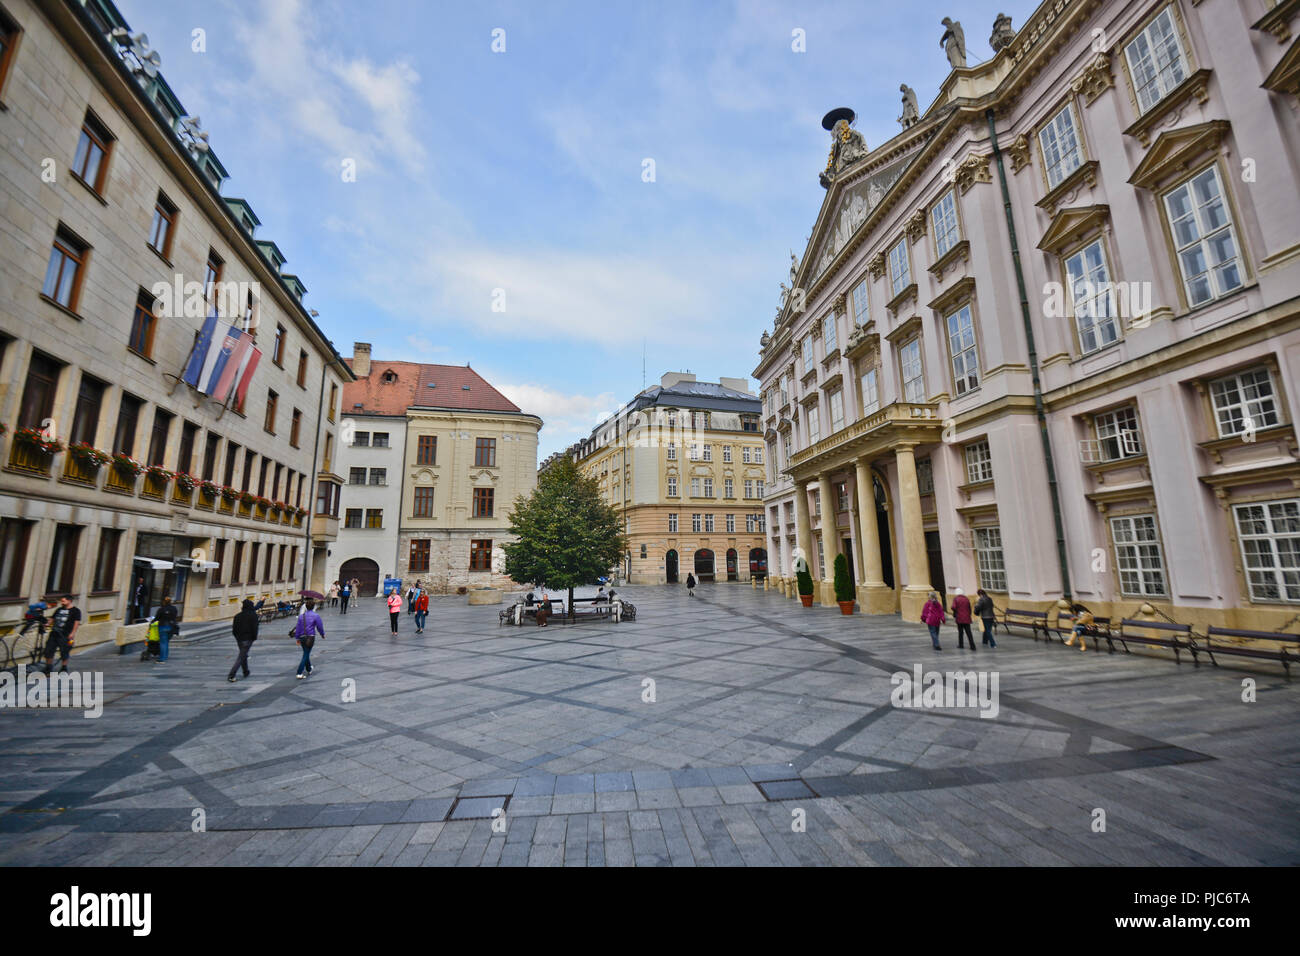 La Plaza de primates, Bratislava, Eslovaquia Foto de stock